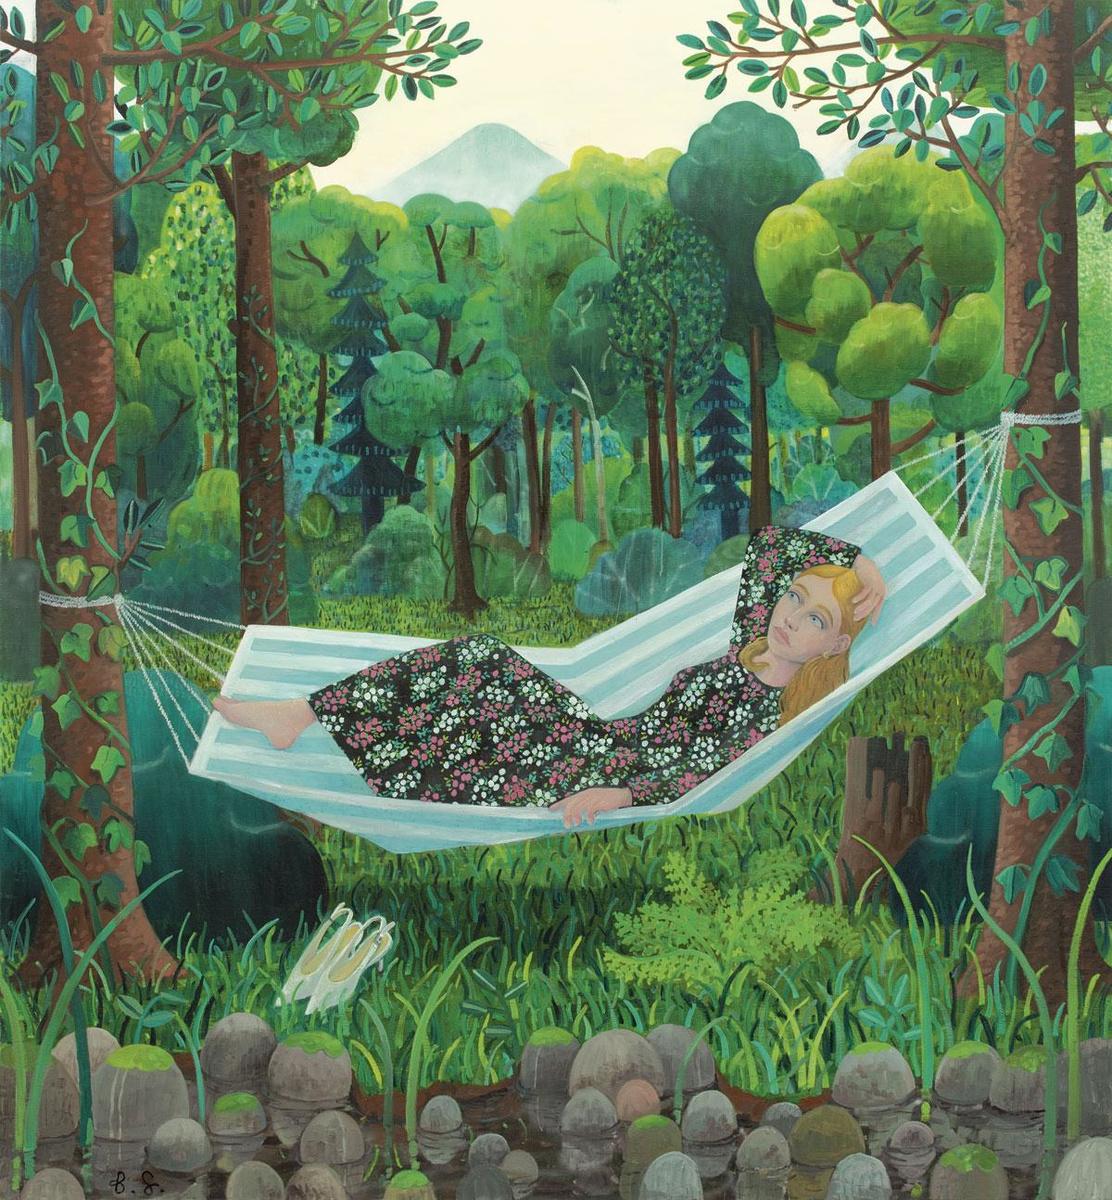 Girl in the hammock